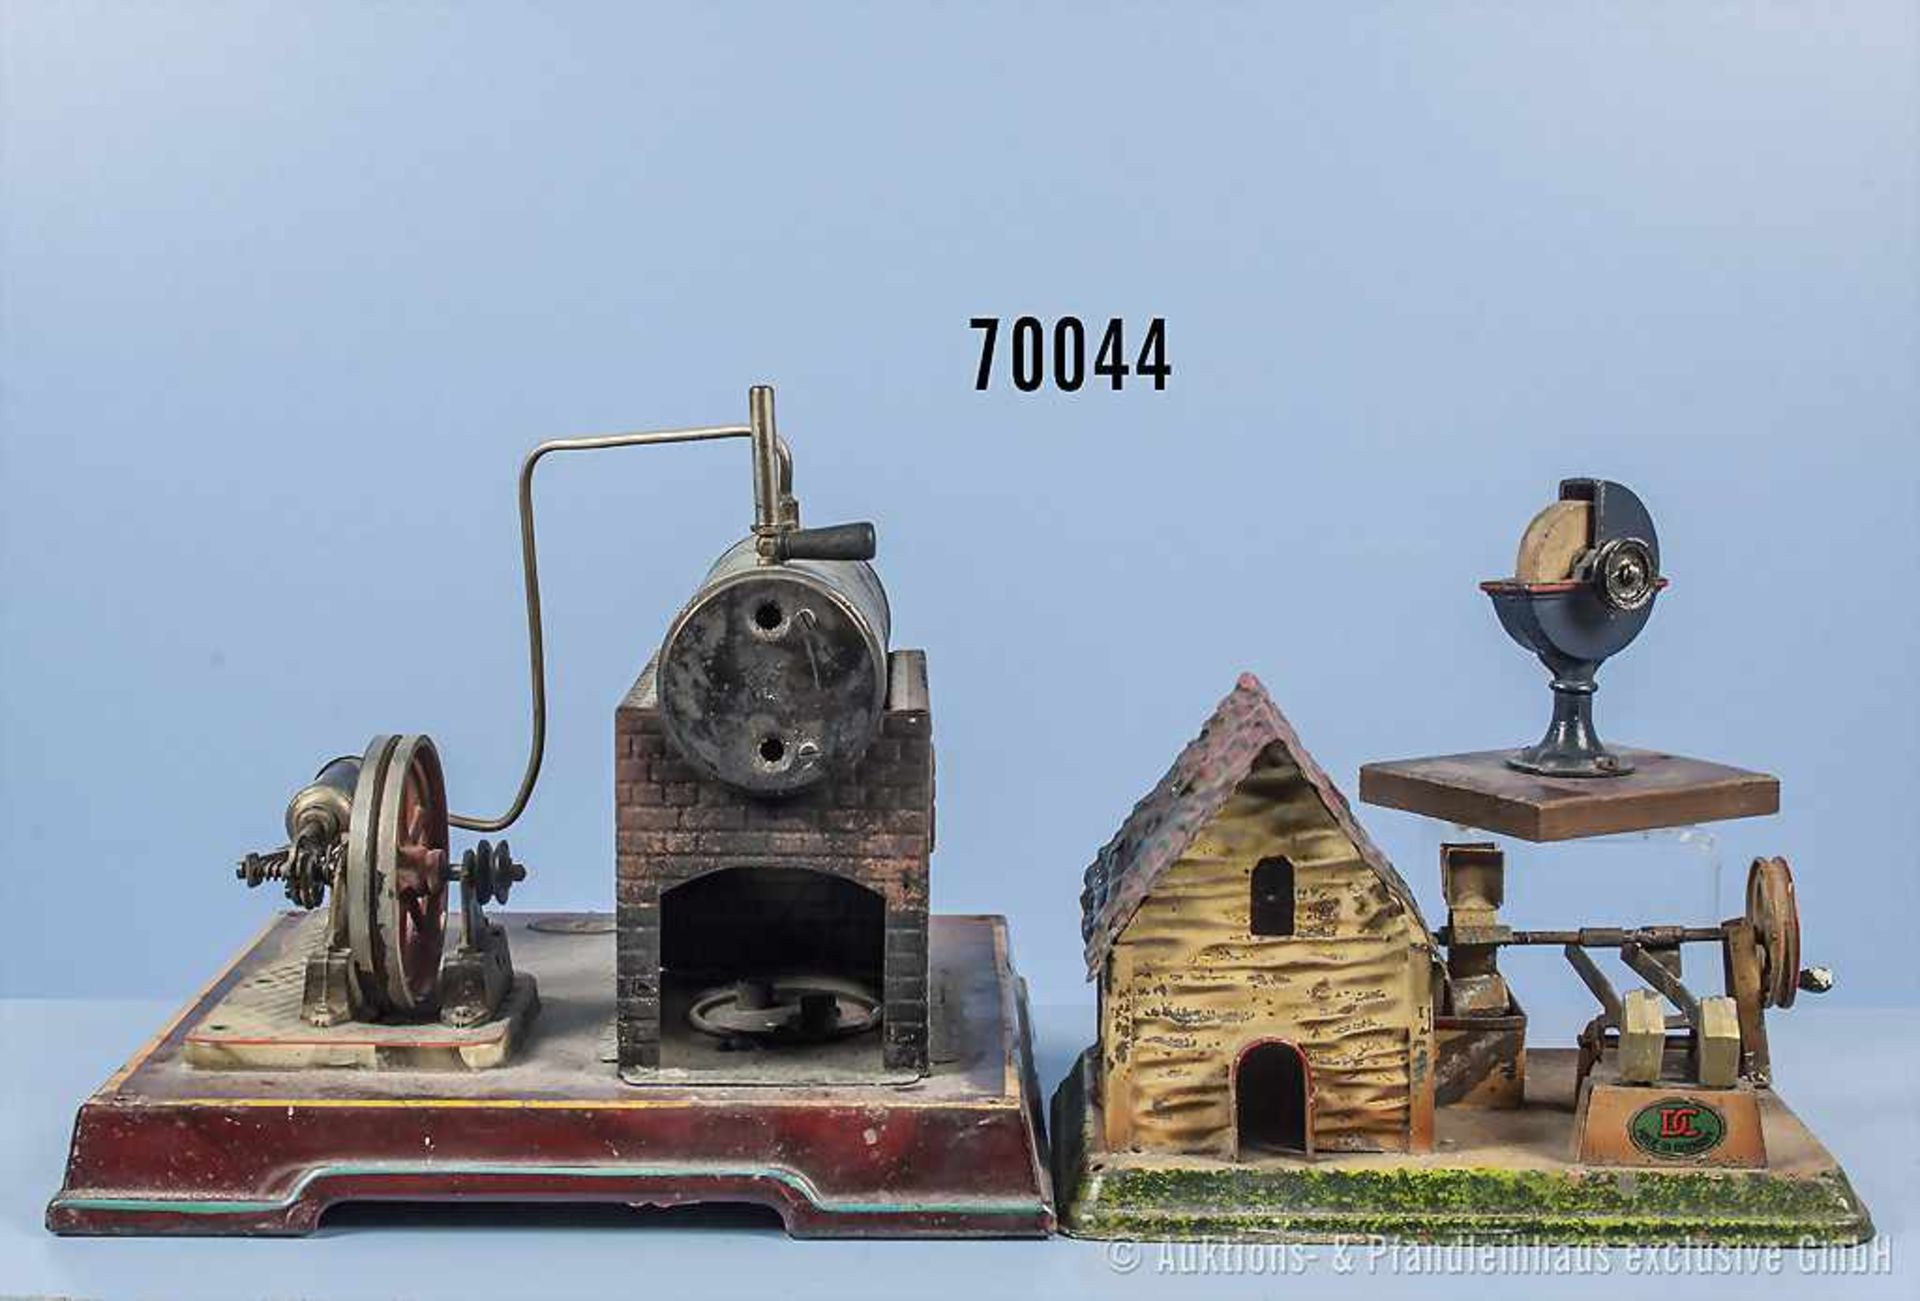 Konv. Falk kleine liegende Dampfmaschine, nicht komplett und 2 Antriebsmodelle, Doll Wassermühle mit